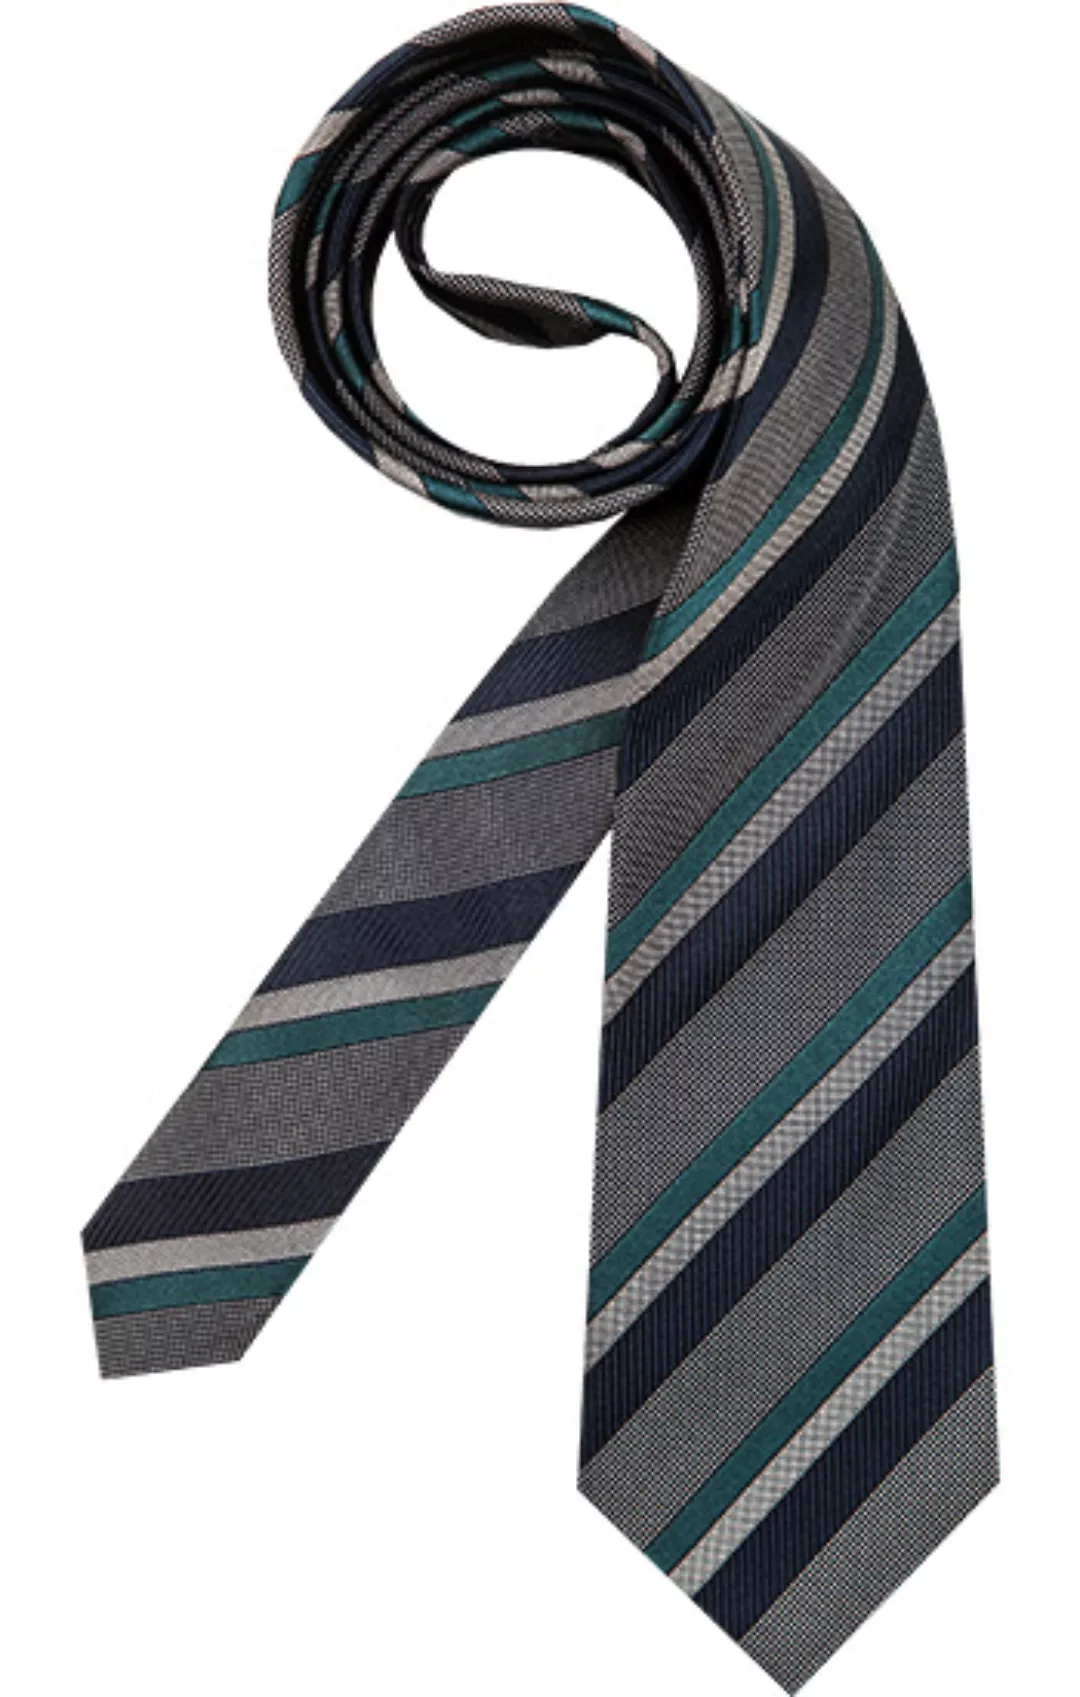 EDSOR Krawatten 2191/28 günstig online kaufen